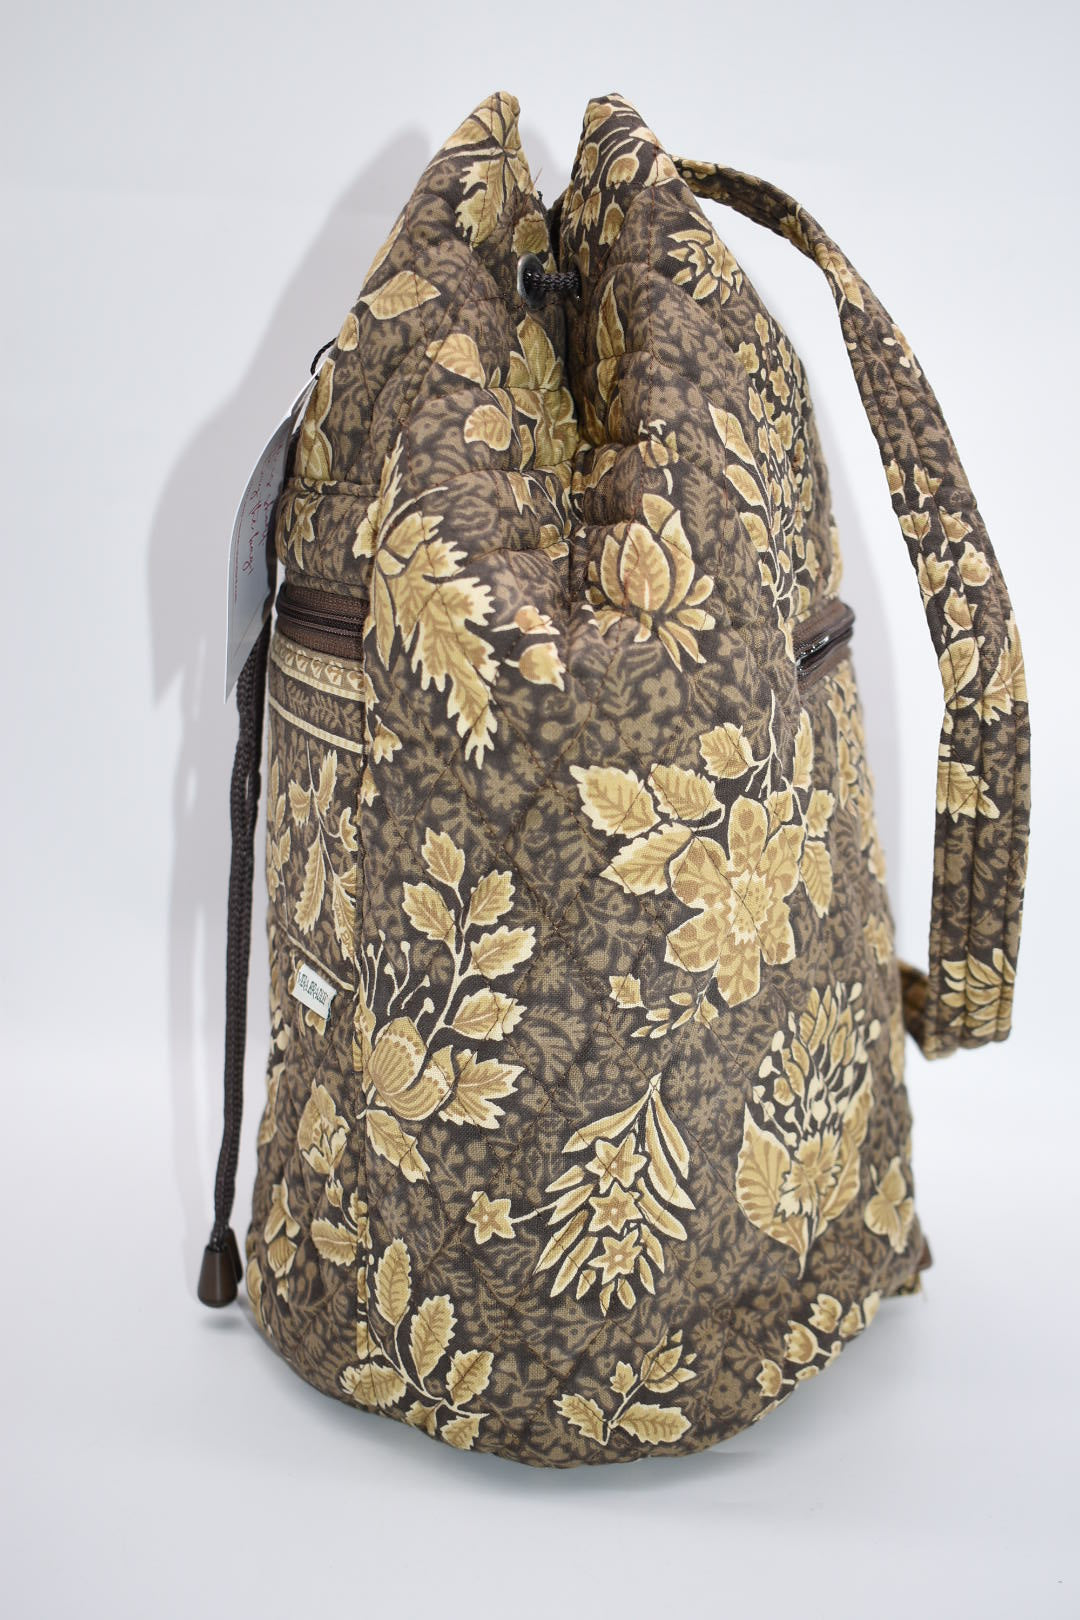 Vintage Vera Bradley Sling Bag in "Java - 1998" Pattern